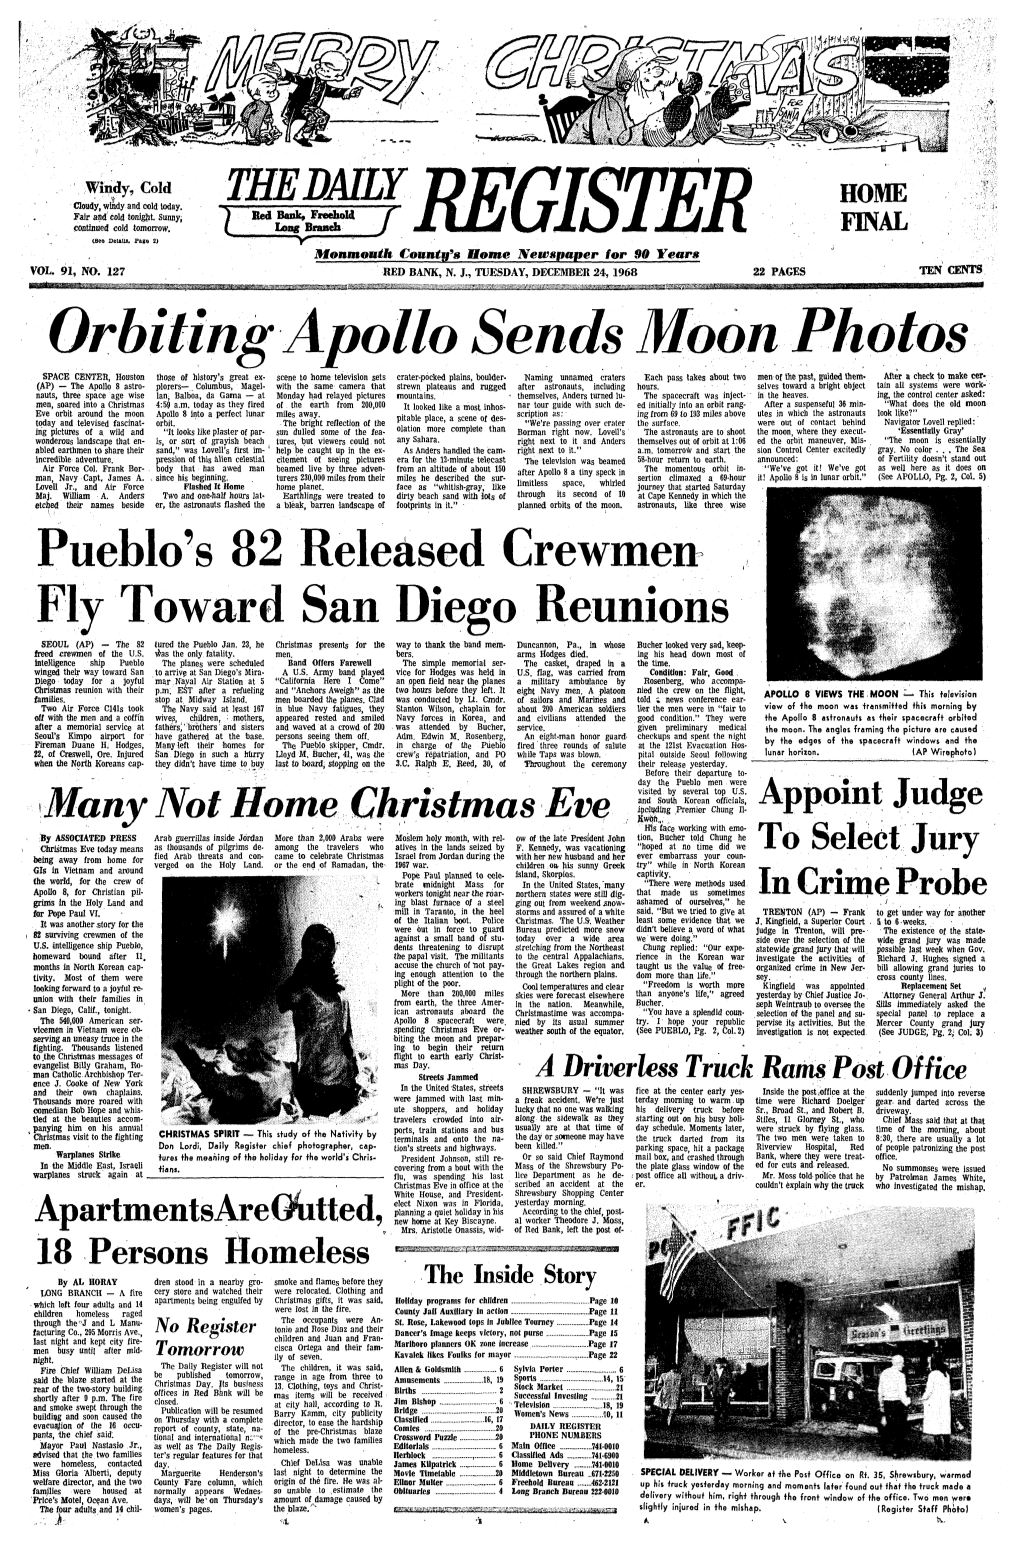 Apollo Sends Moon Photos